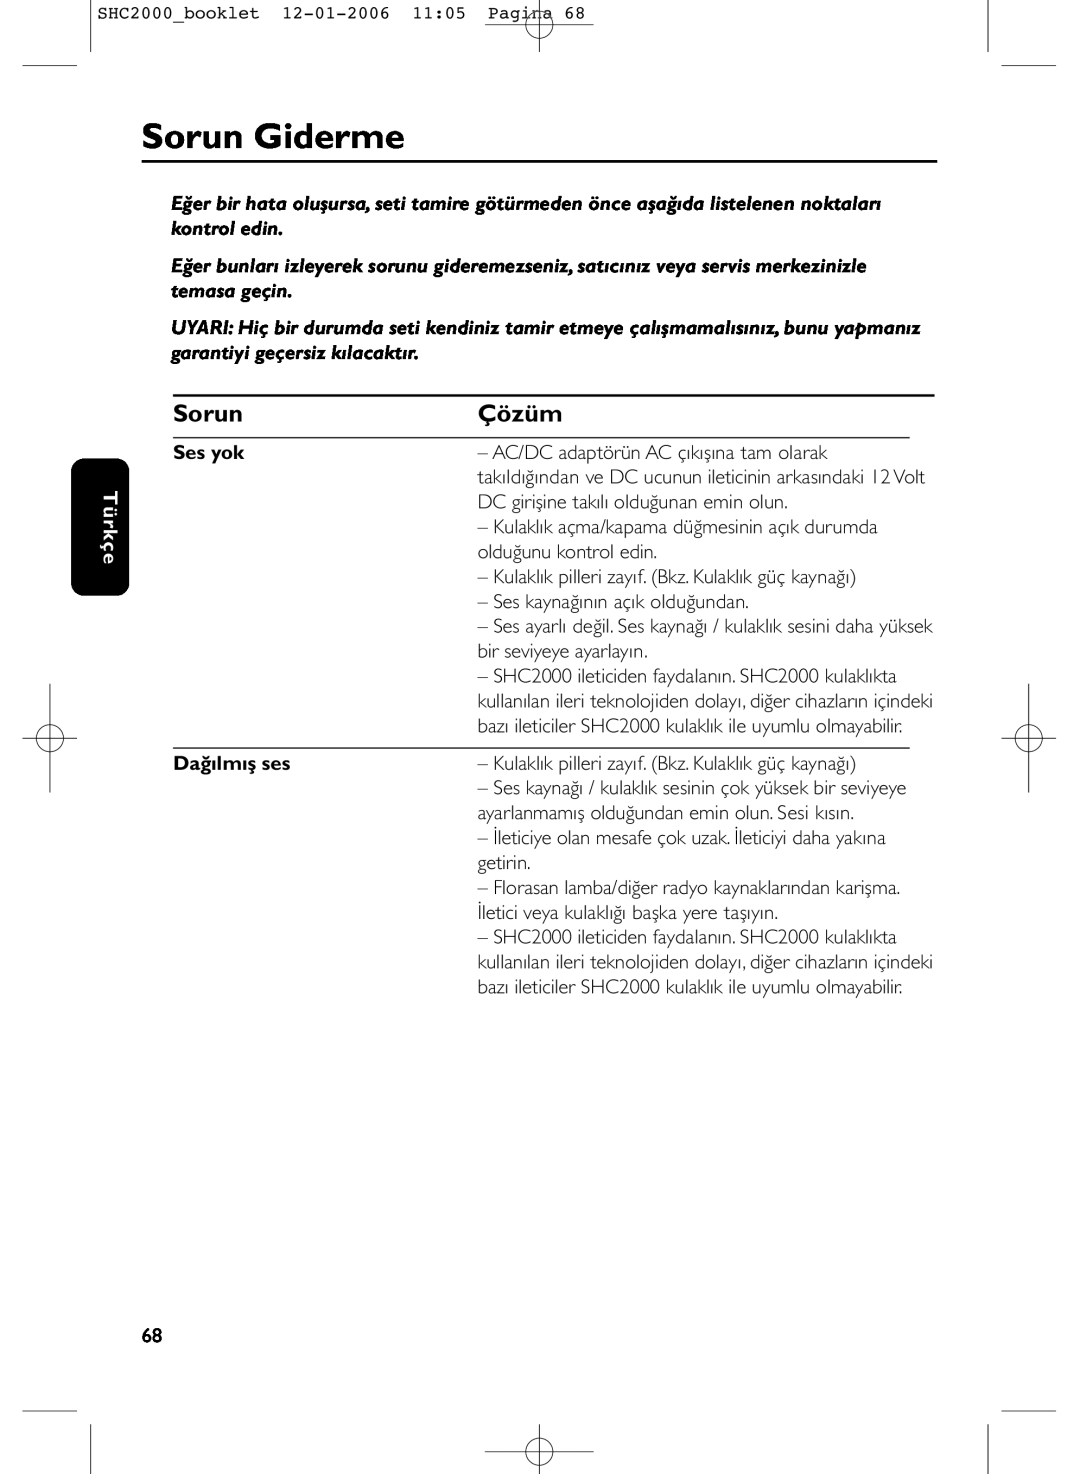 Philips SHC2000 manual Sorun Giderme, Çözüm, Türkçe, Ses yok, Dağılmış ses 